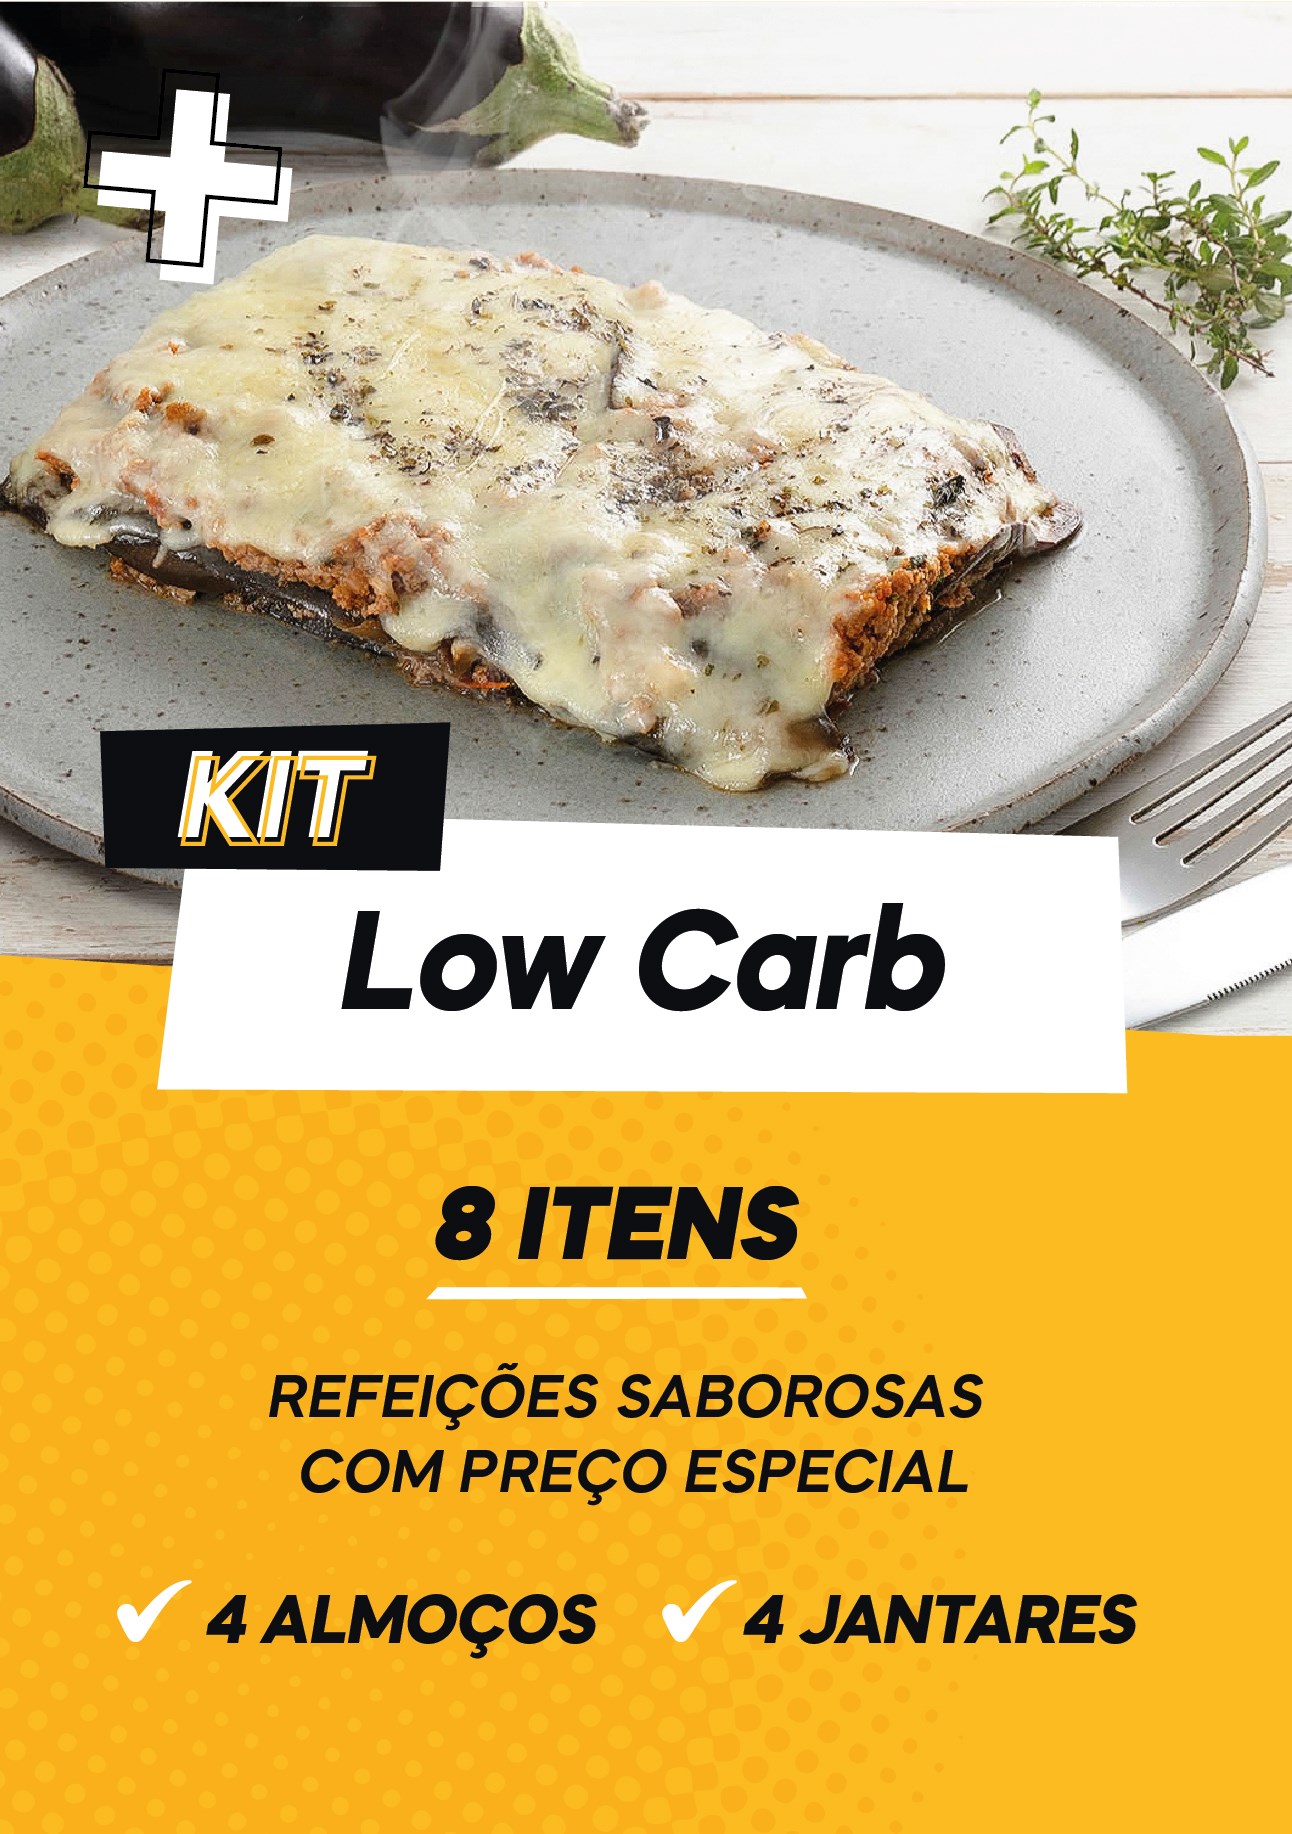 KIT Low Carb